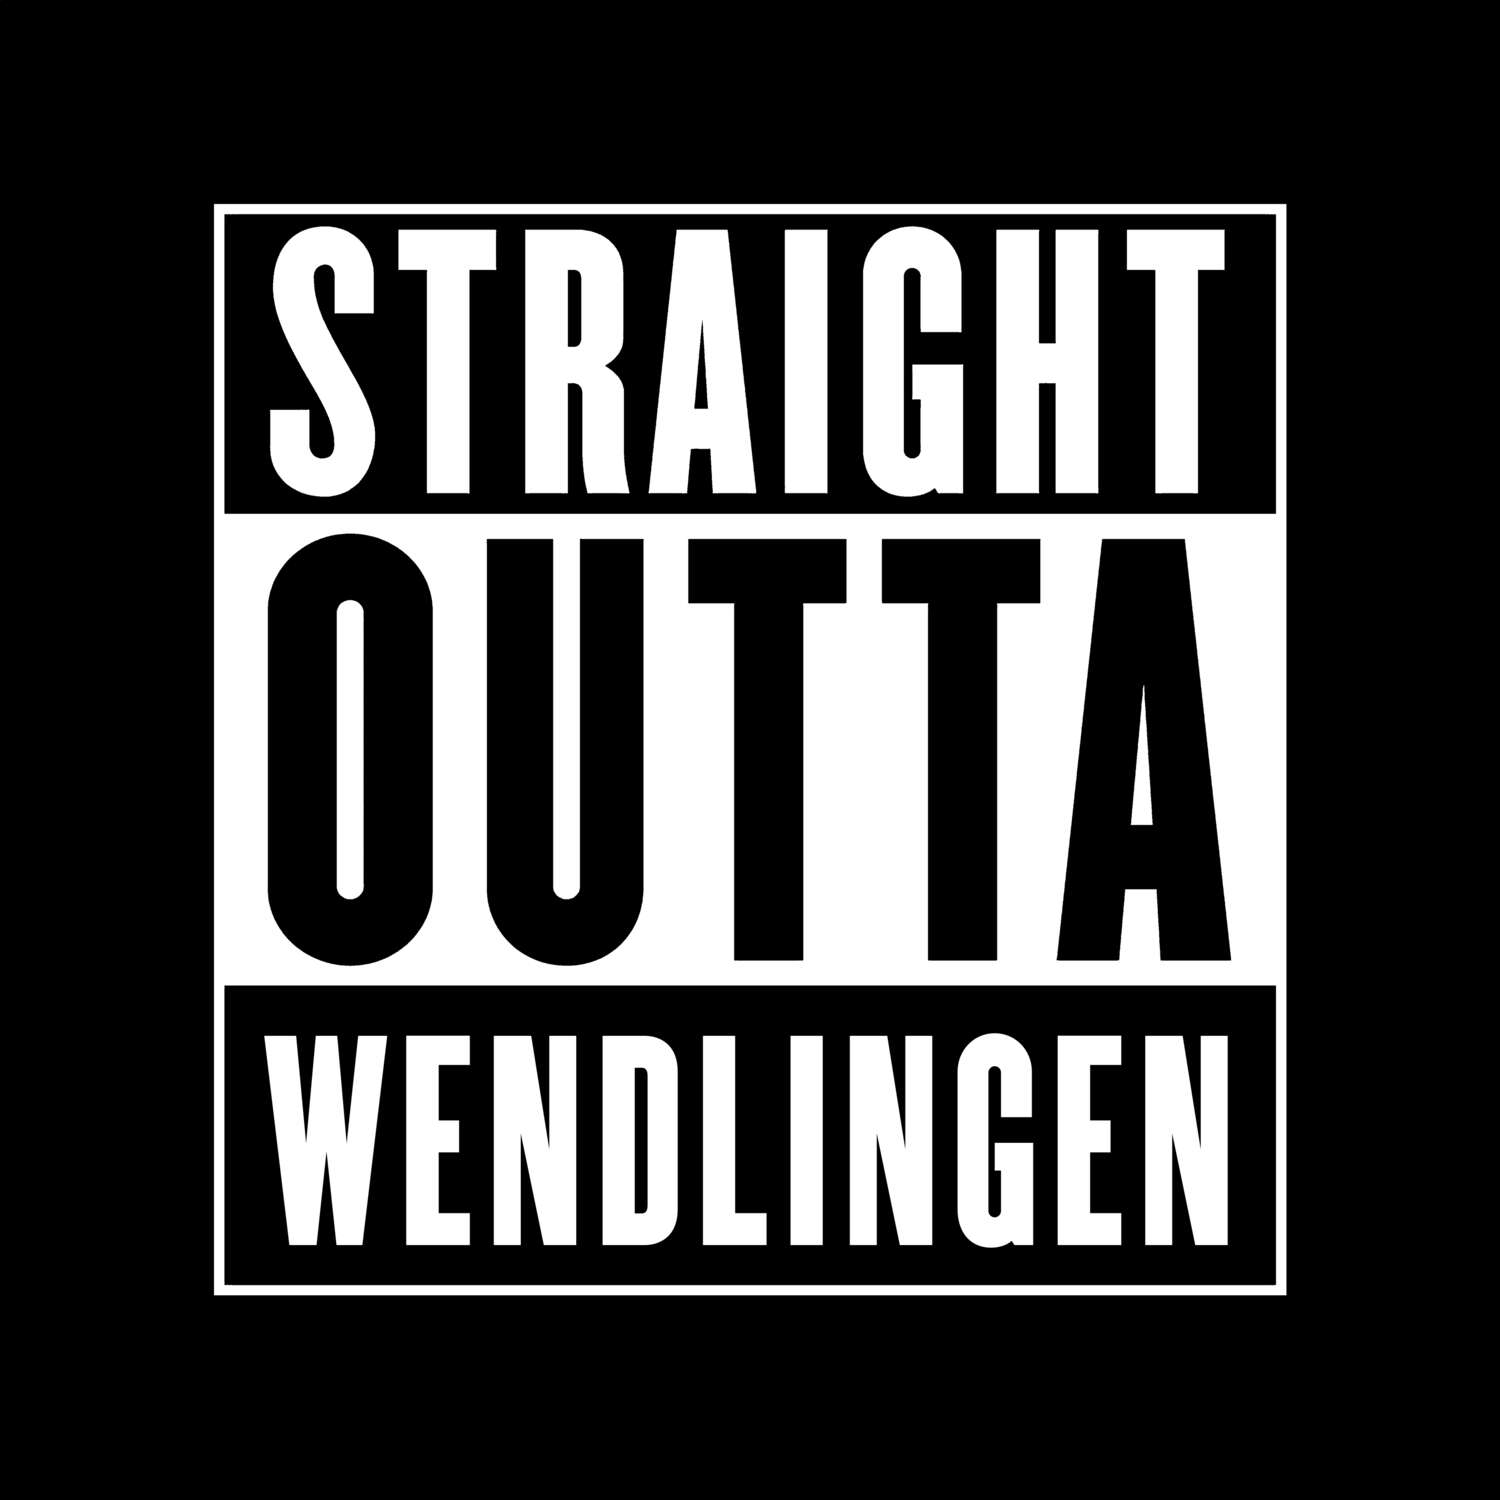 Wendlingen T-Shirt »Straight Outta«